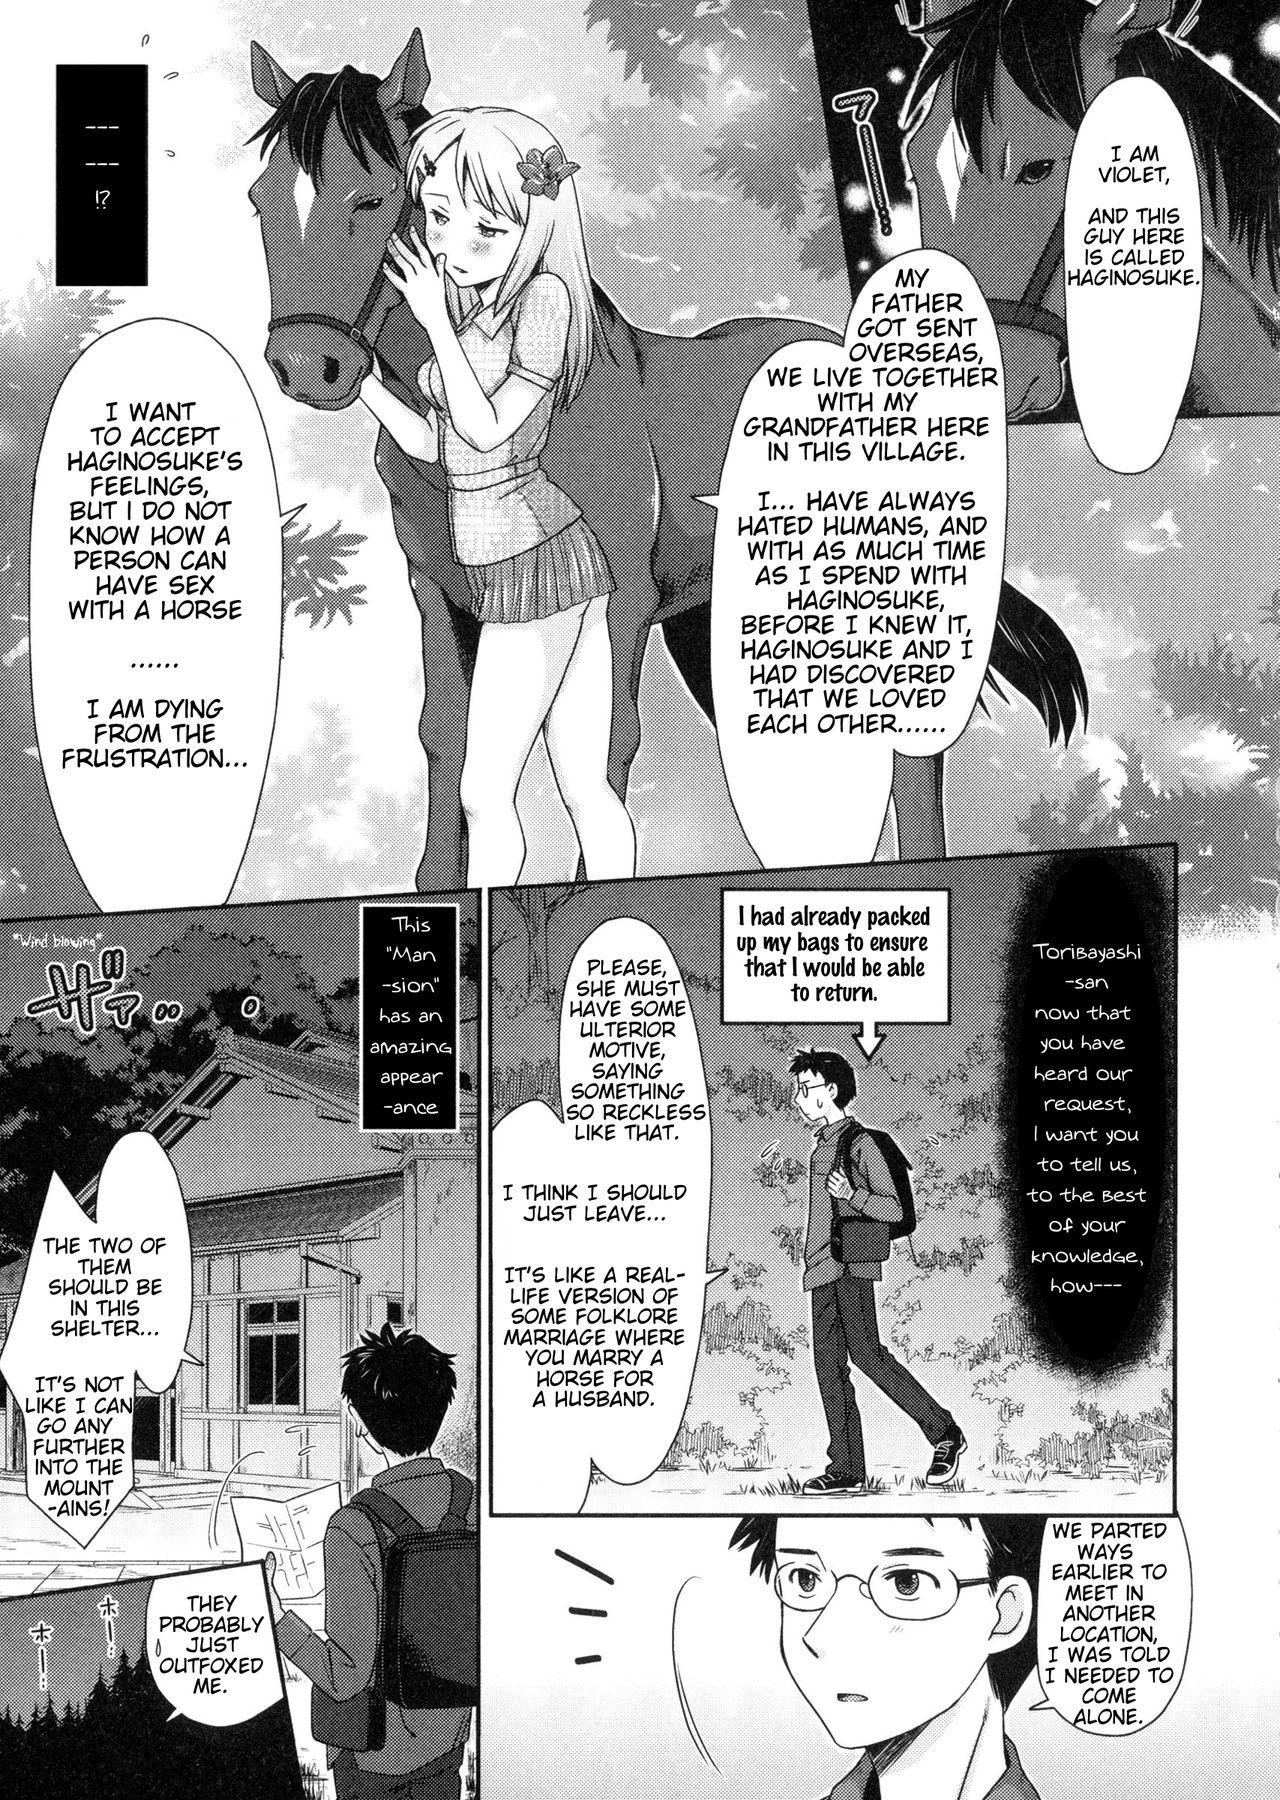 Oiled Umamuko Kitan | Horse Husband, the Strange Tale of Haginosuke and Violet Pawg - Page 5